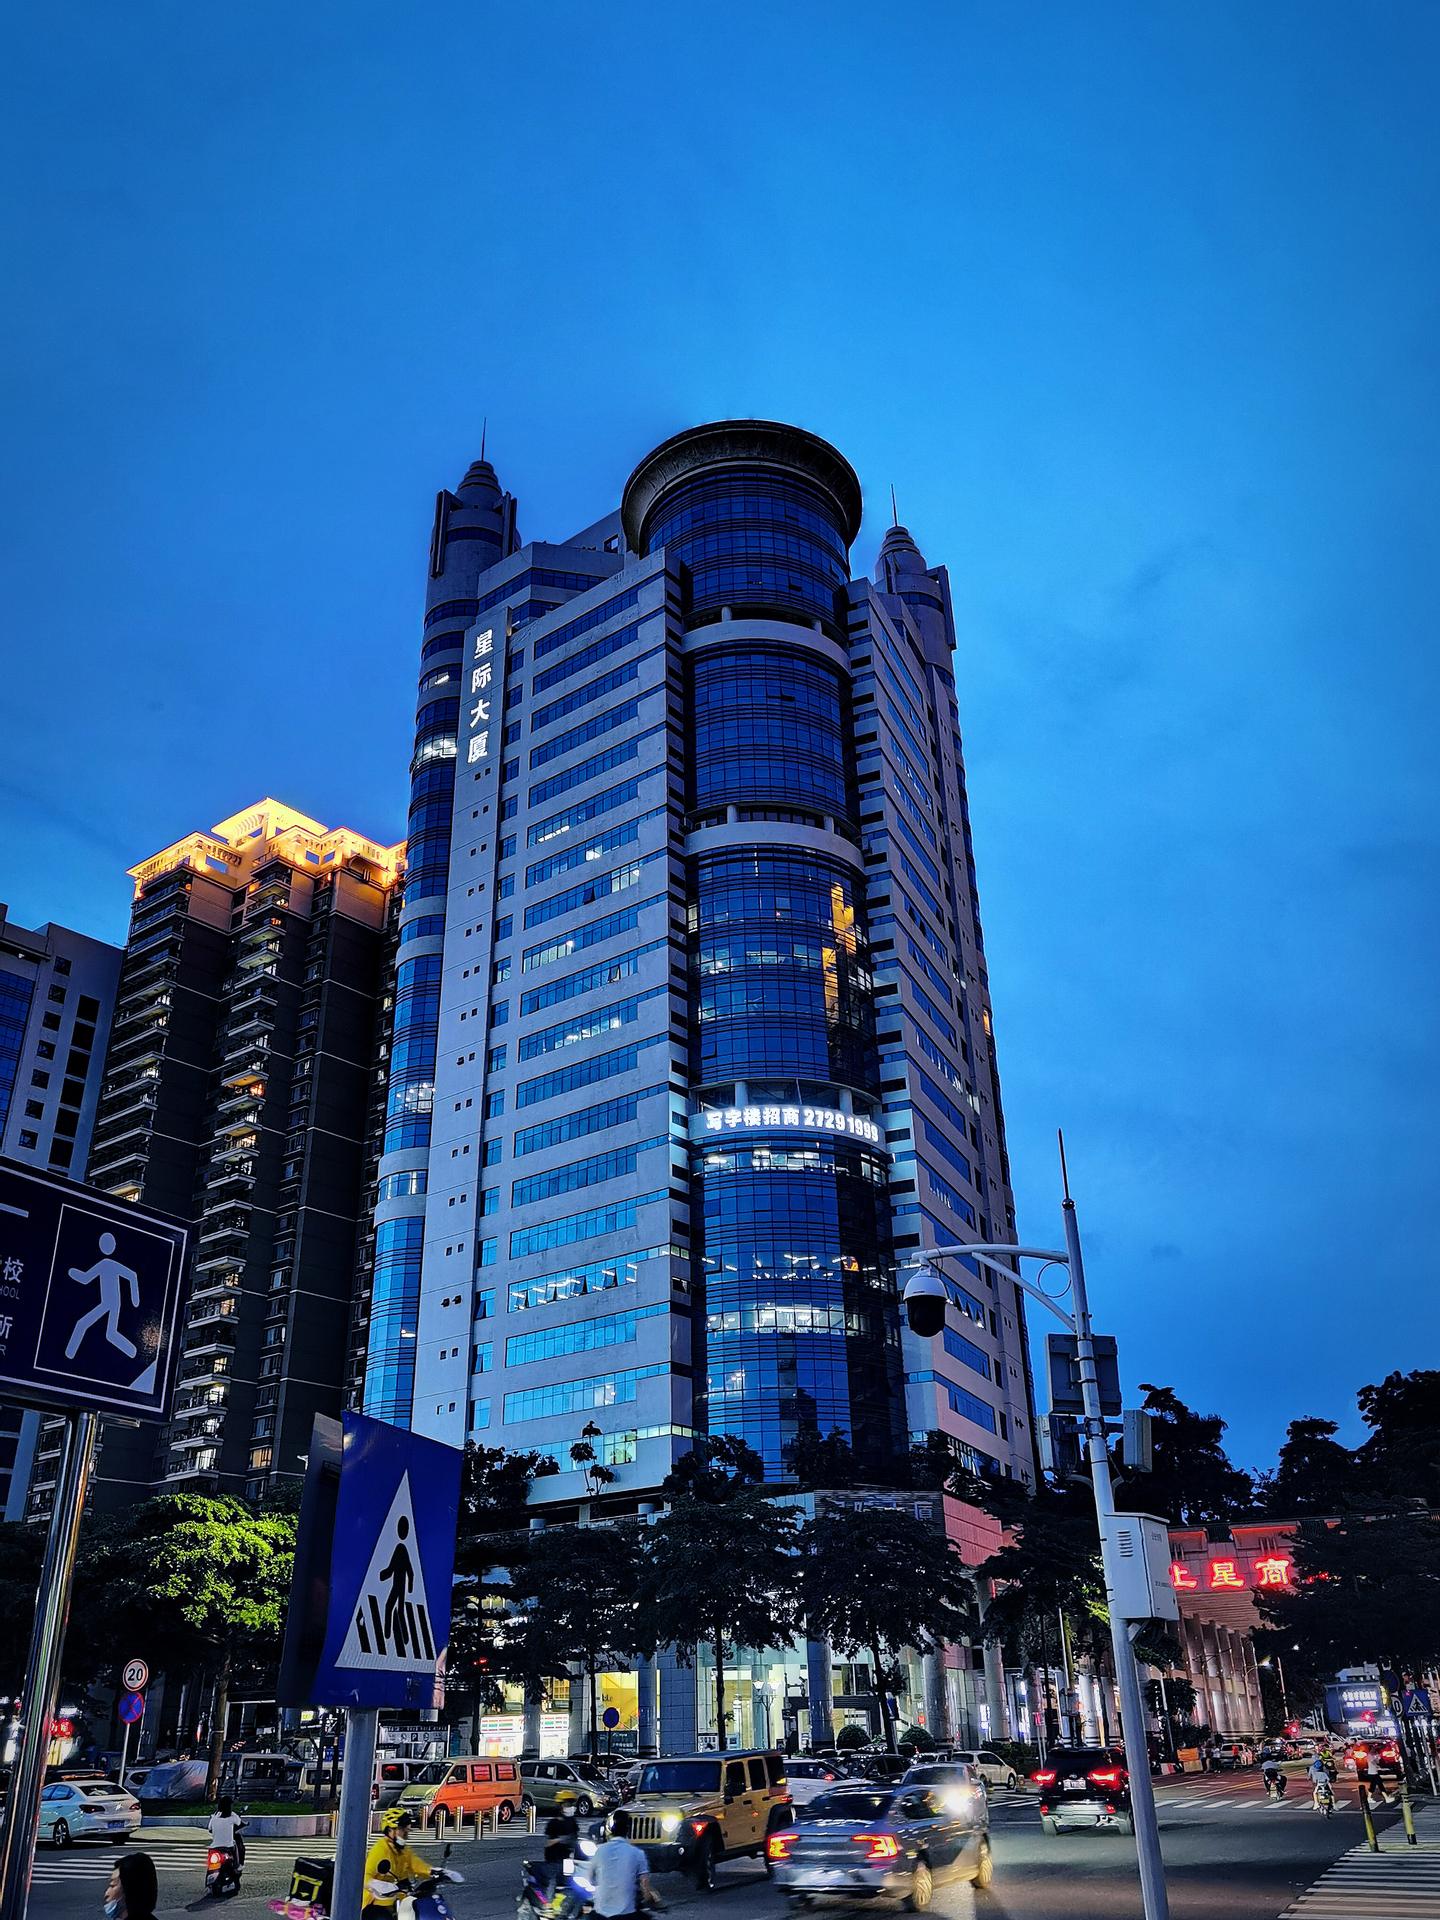 倍电科技总部位于广东省深圳市宝安区沙井新桥街道上星路星际大厦